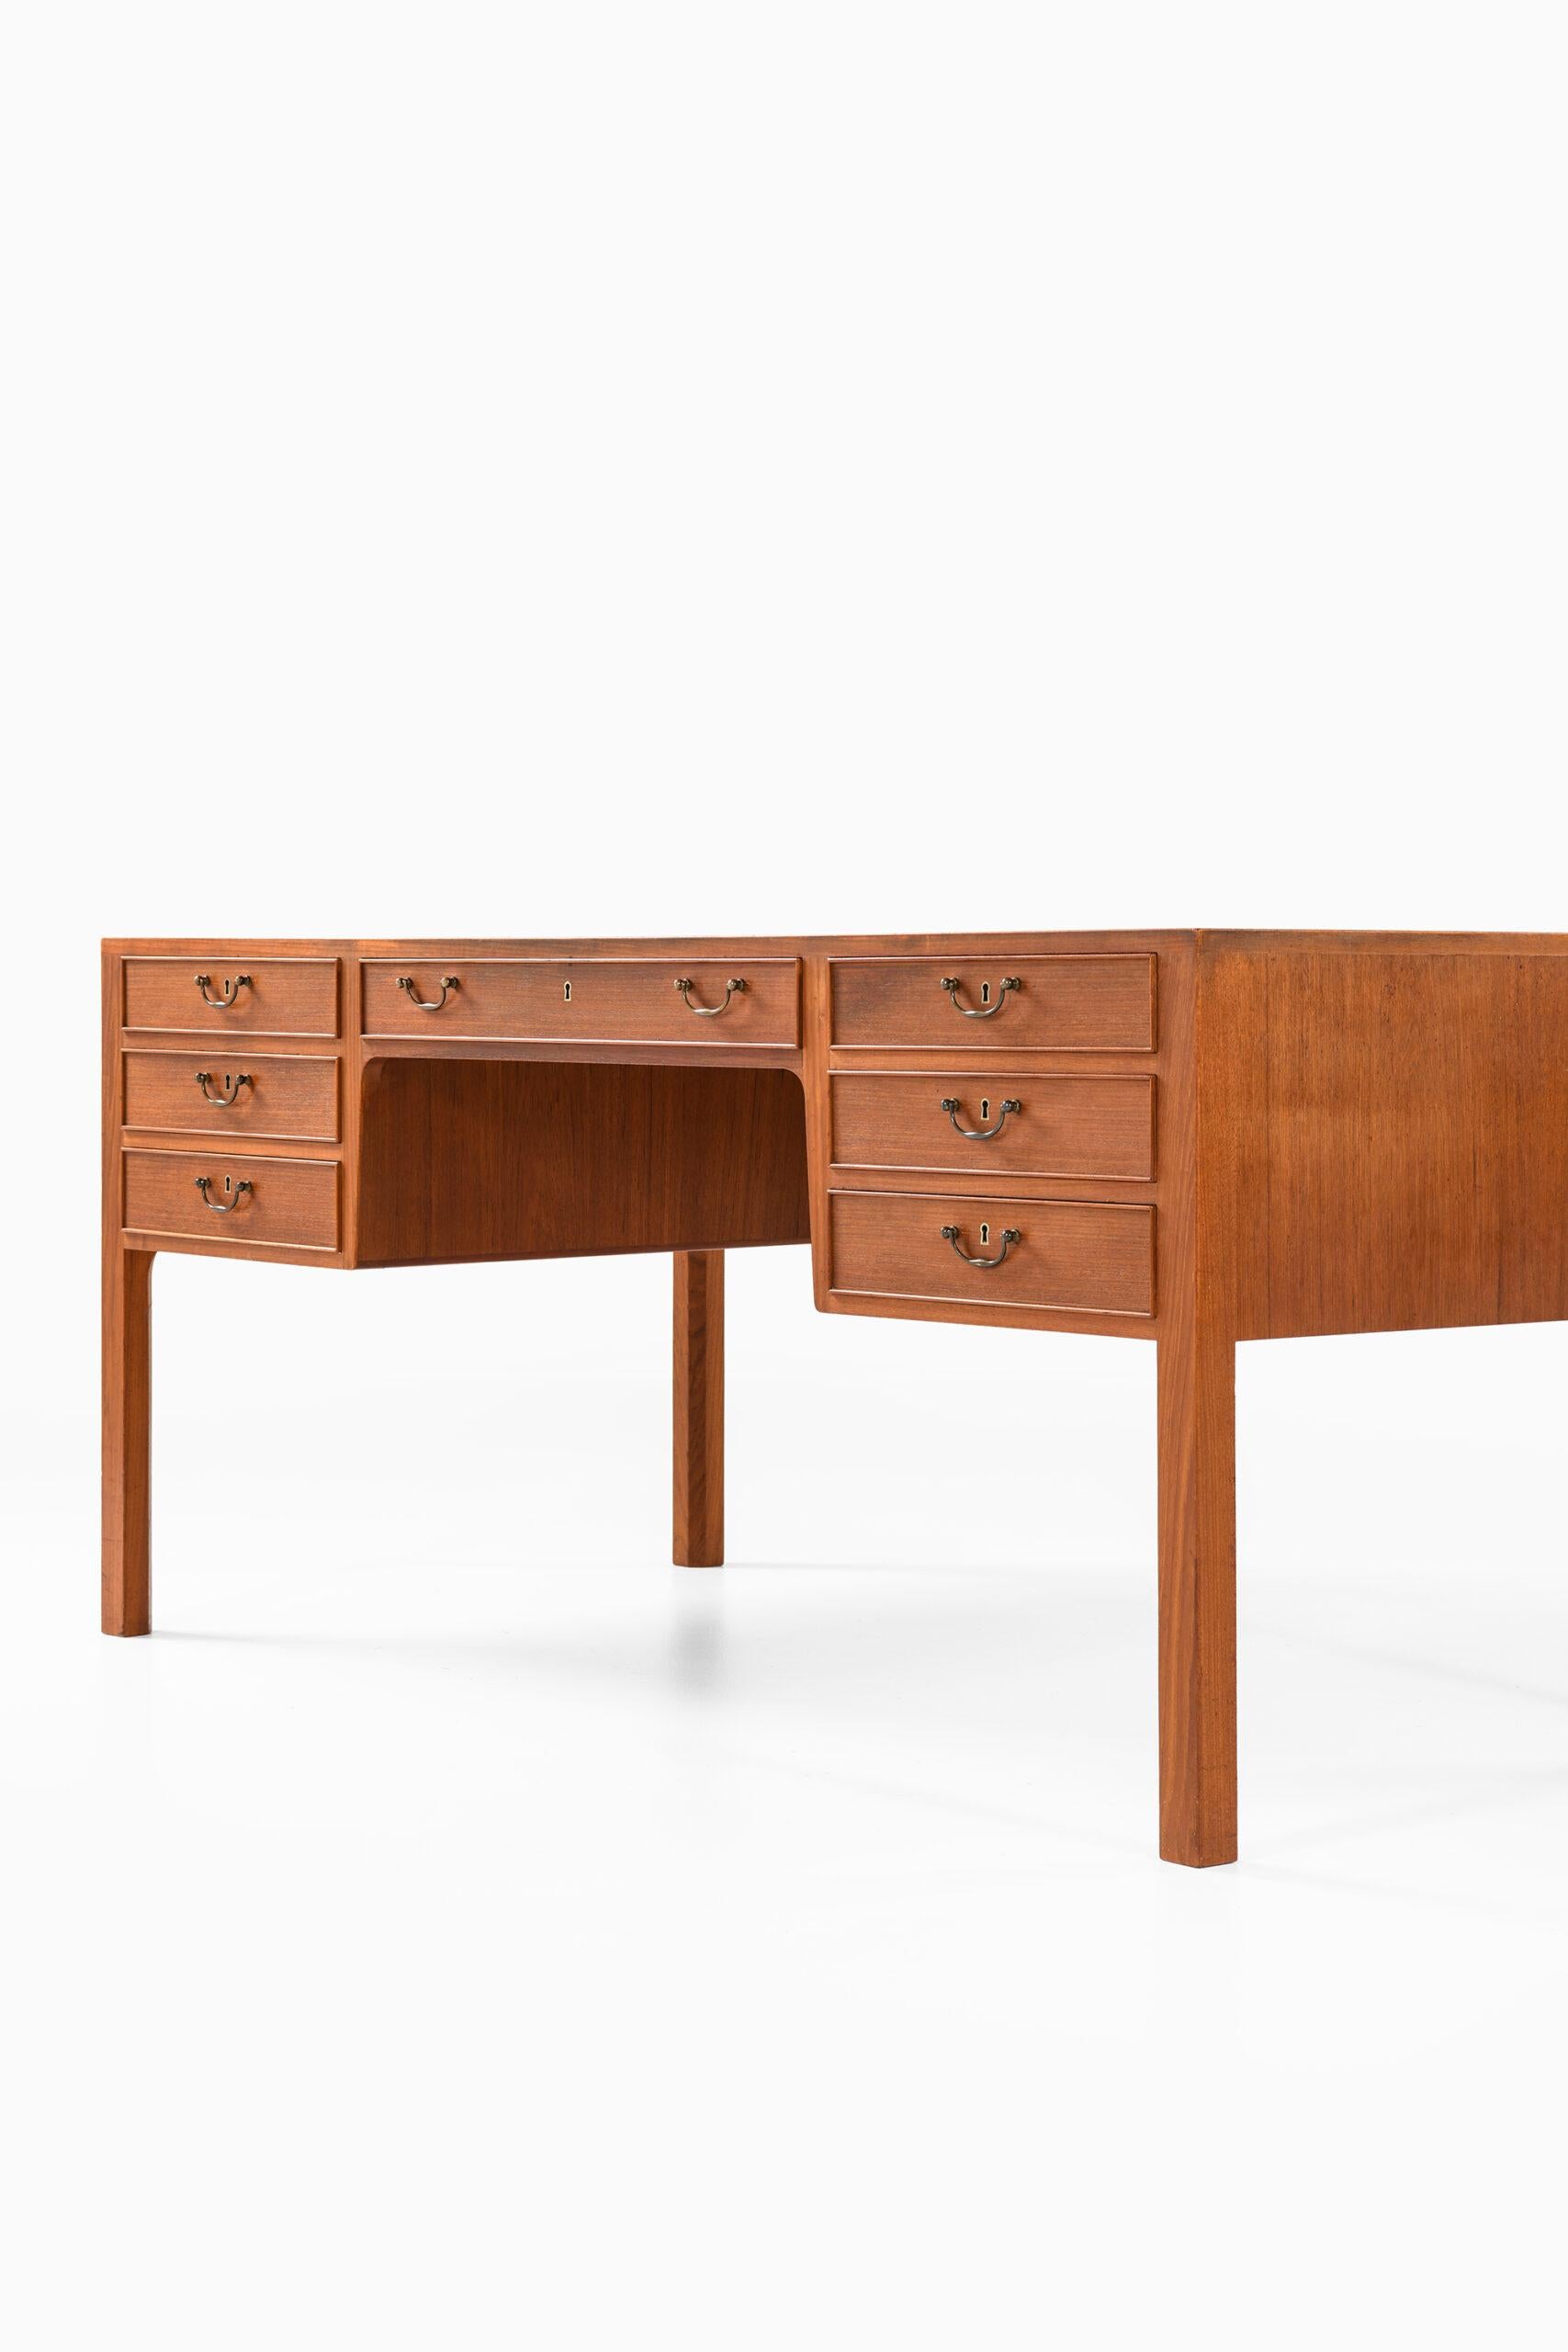 Ole Wanscher Desk Produced by Cabinetmaker A.J. Iversen in Denmark 1